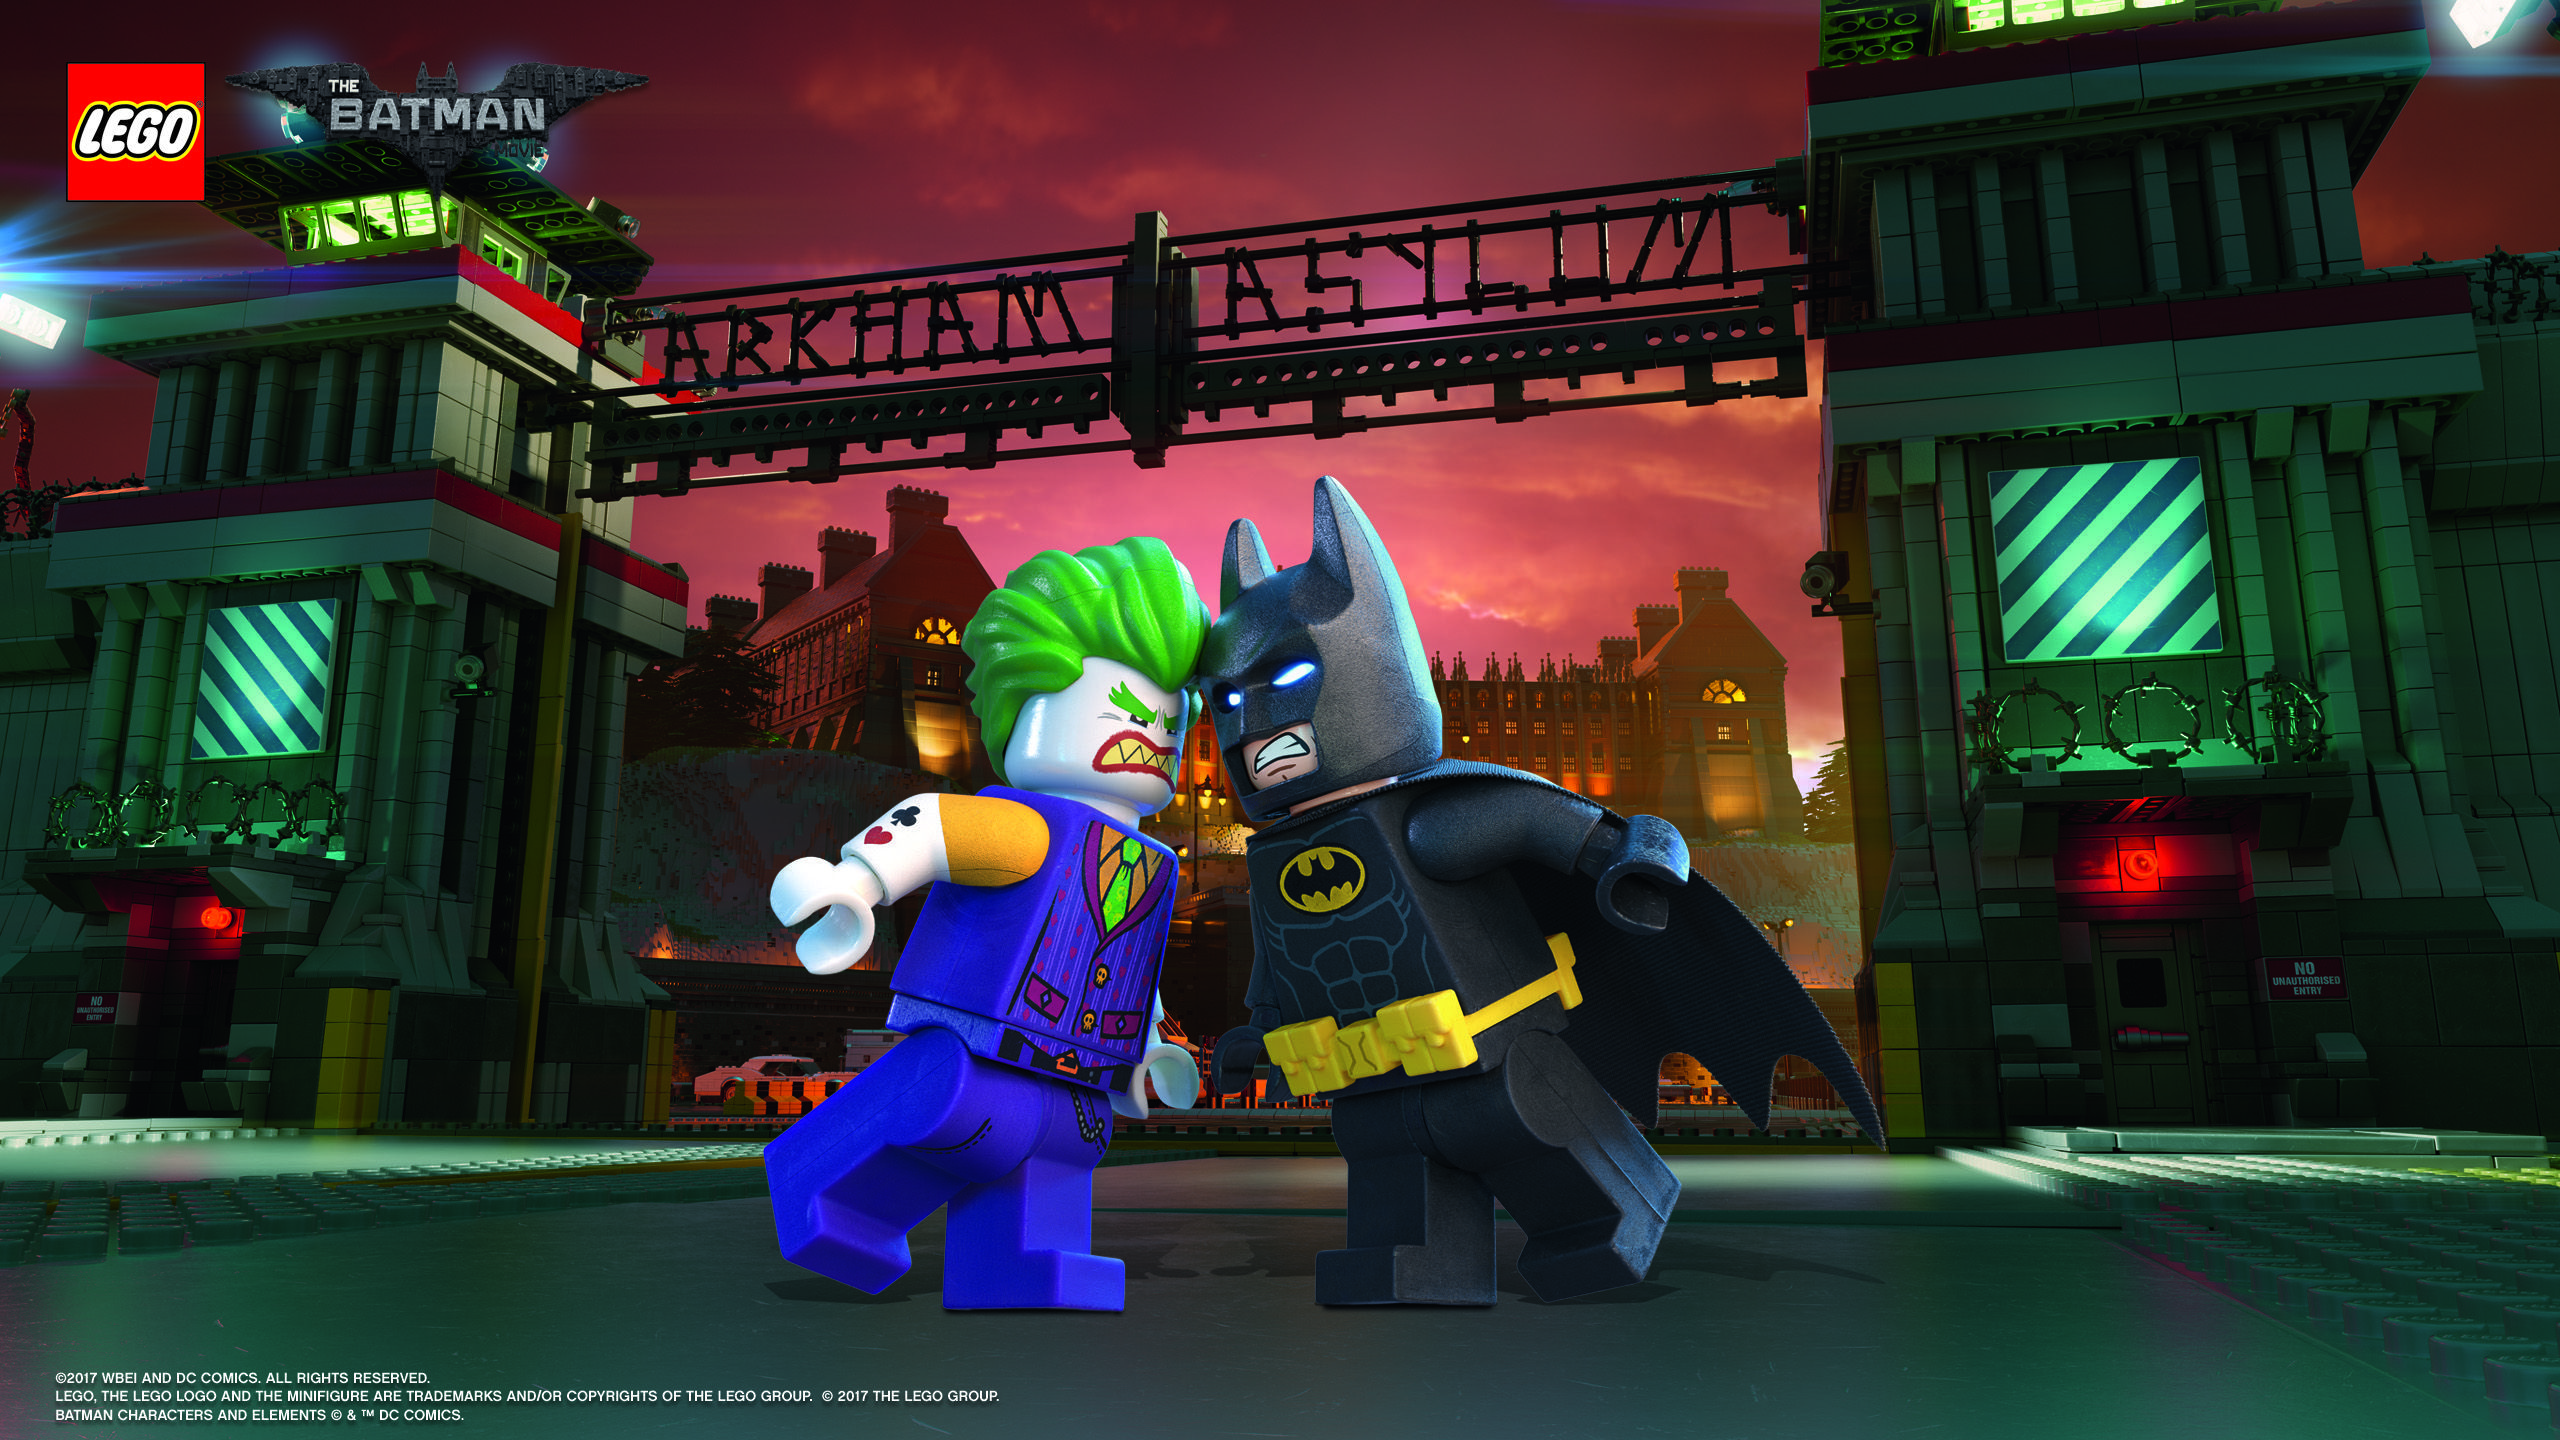 LEGO Batman & Joker. Joker wallpaper, Lego batman, Lego batman games